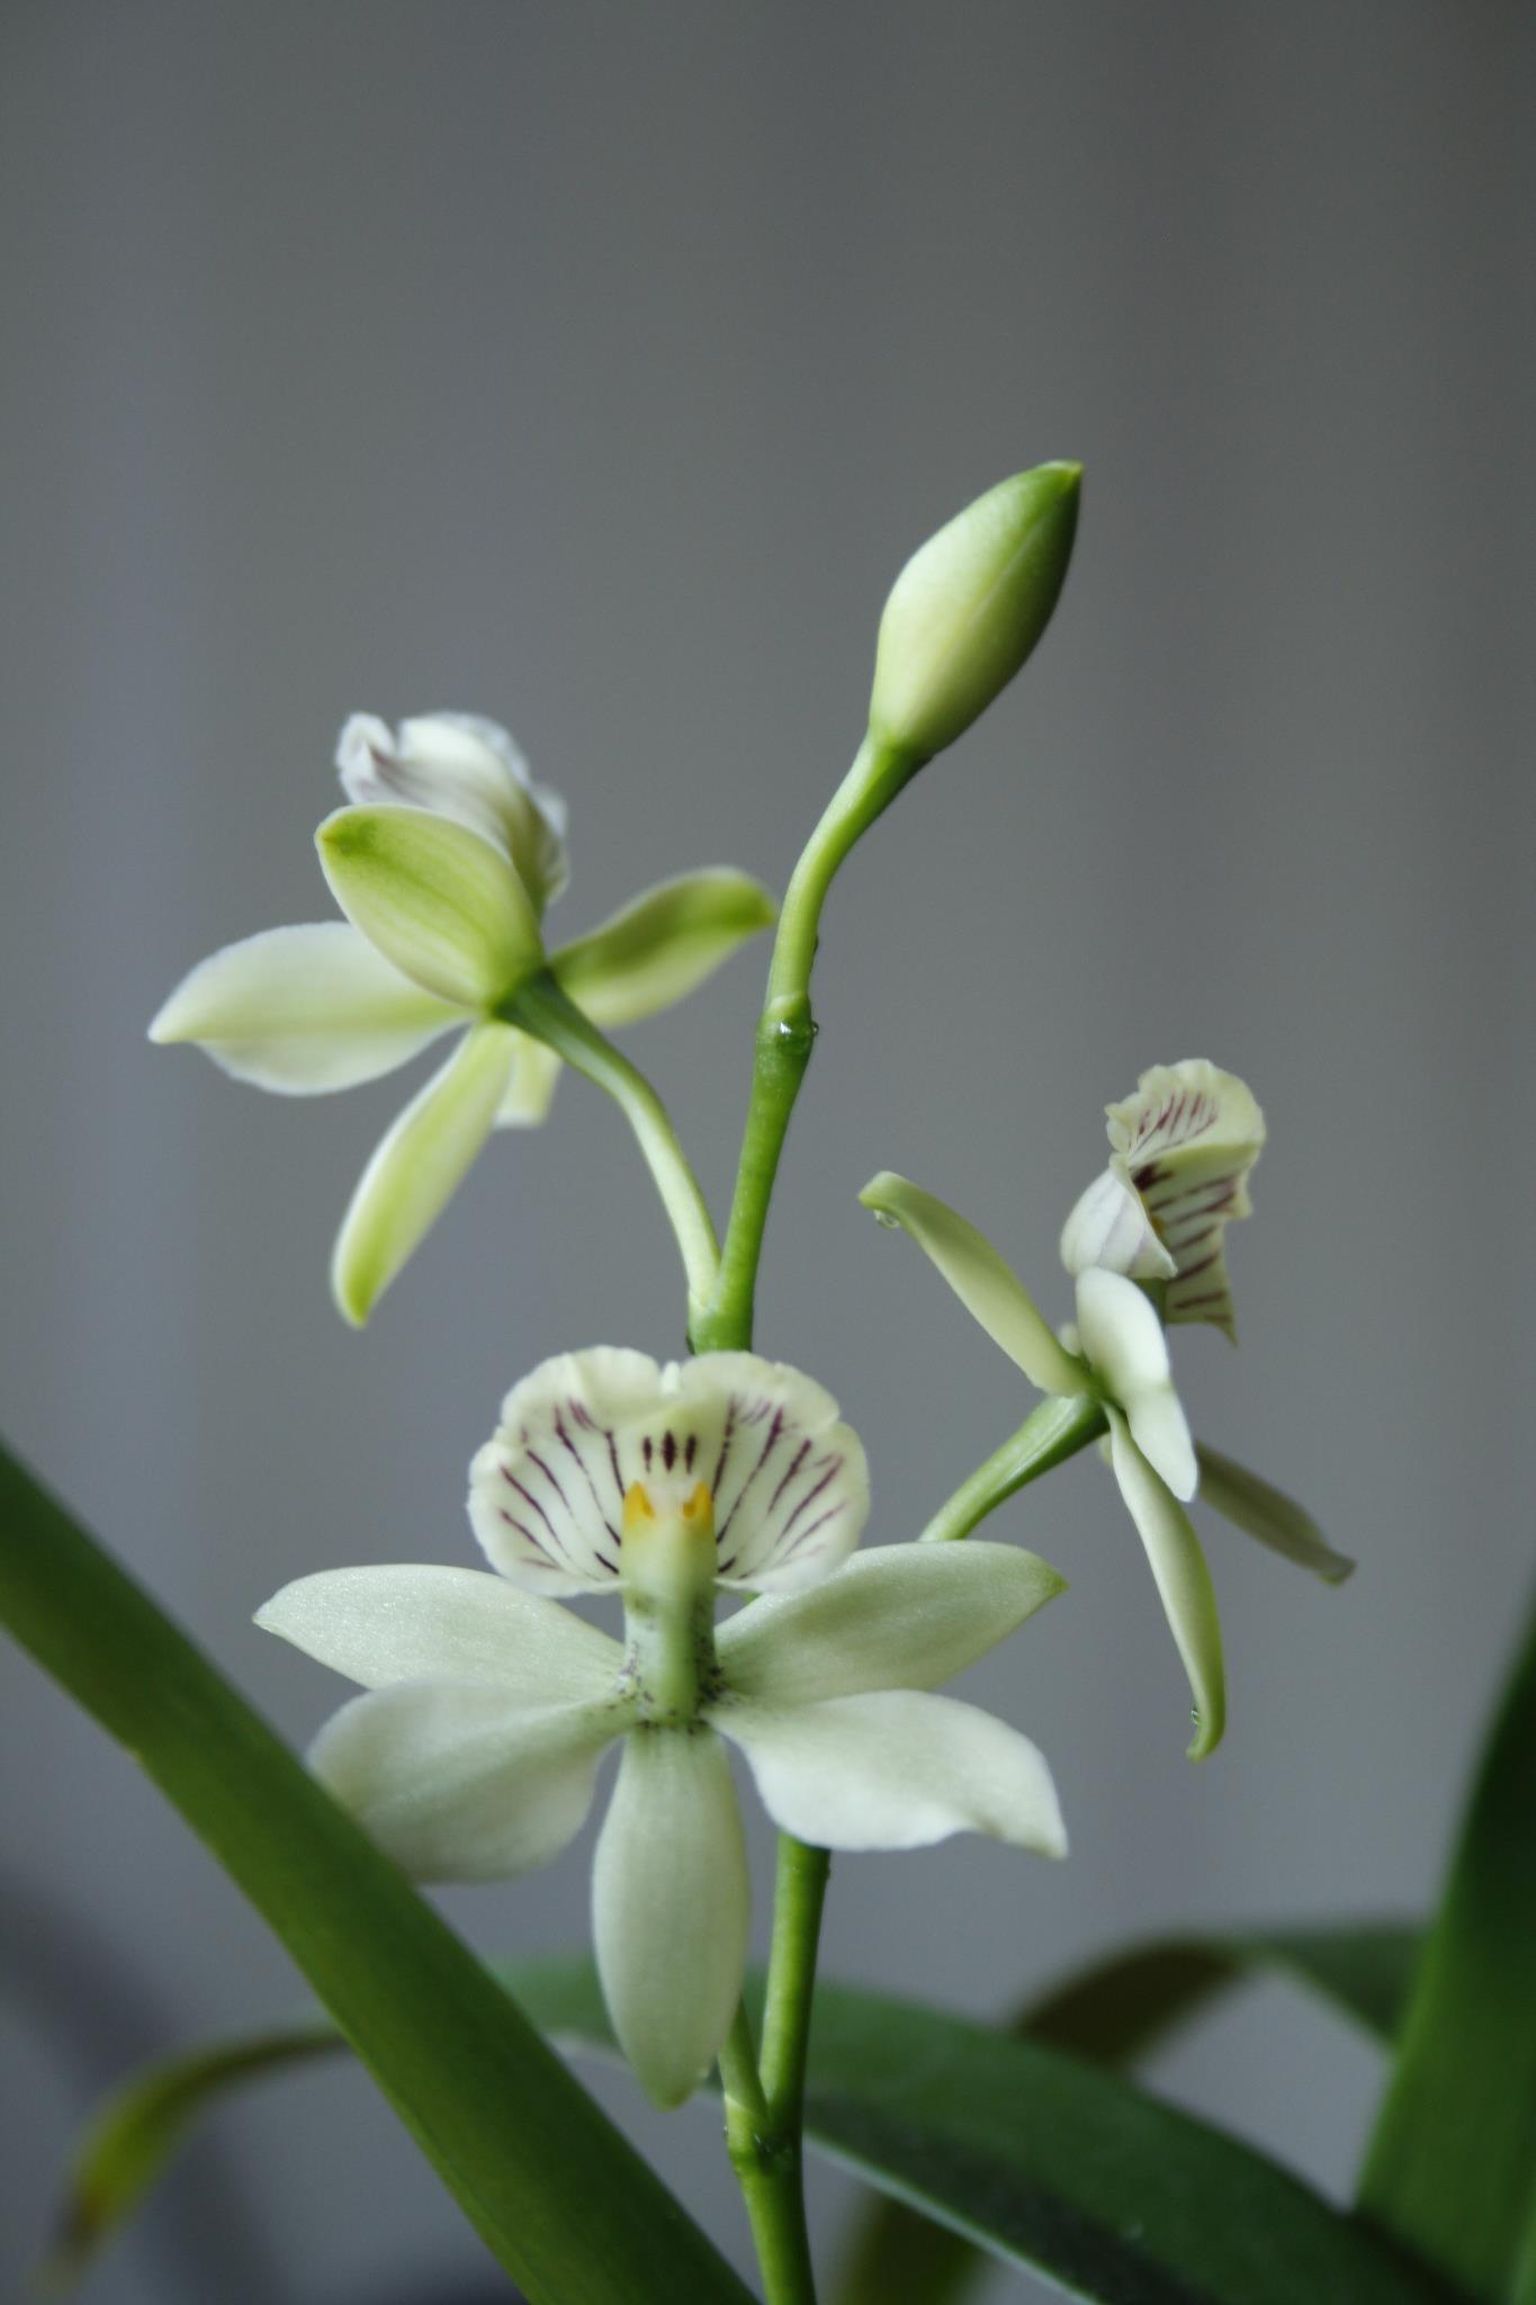 Merle Toompark on kodus orhideesid kasvatanud 14 aastat, praegu on tal taimi 50 ringis. Sellel fotol on näha Encyclia radiata.